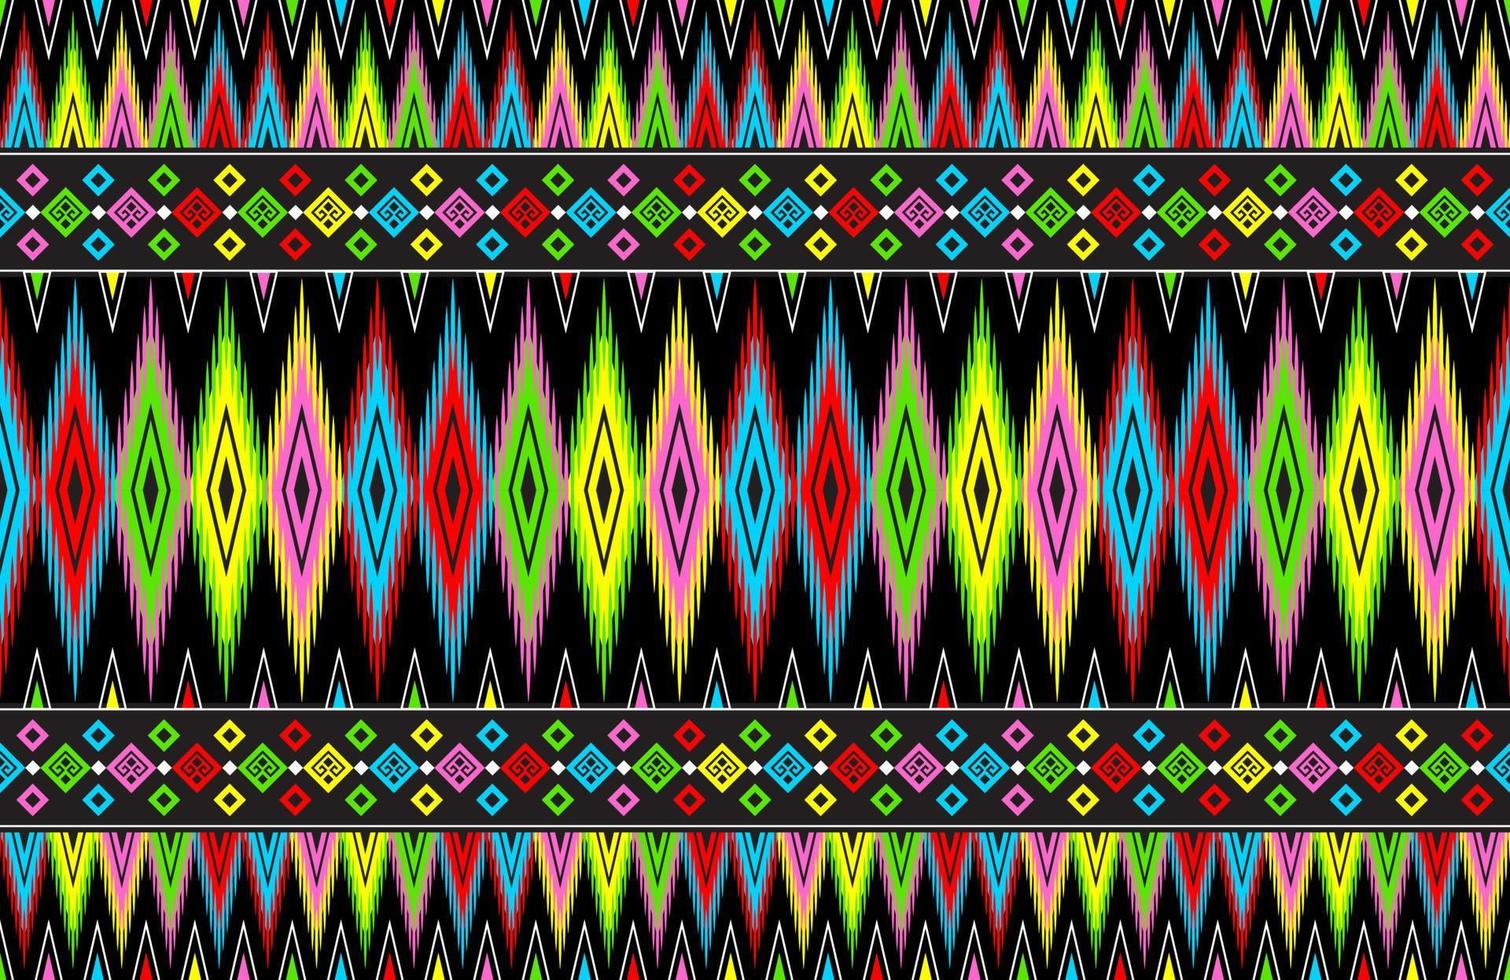 abstrakte niedliche farbe geometrische tribal ethnische ikat folklore argyle orientalisches einheimisches muster traditionelles design für hintergrund, teppich, tapete, kleidung, stoff, verpackung, druck, batik, volkstümlich, stricken, streifenvektor vektor